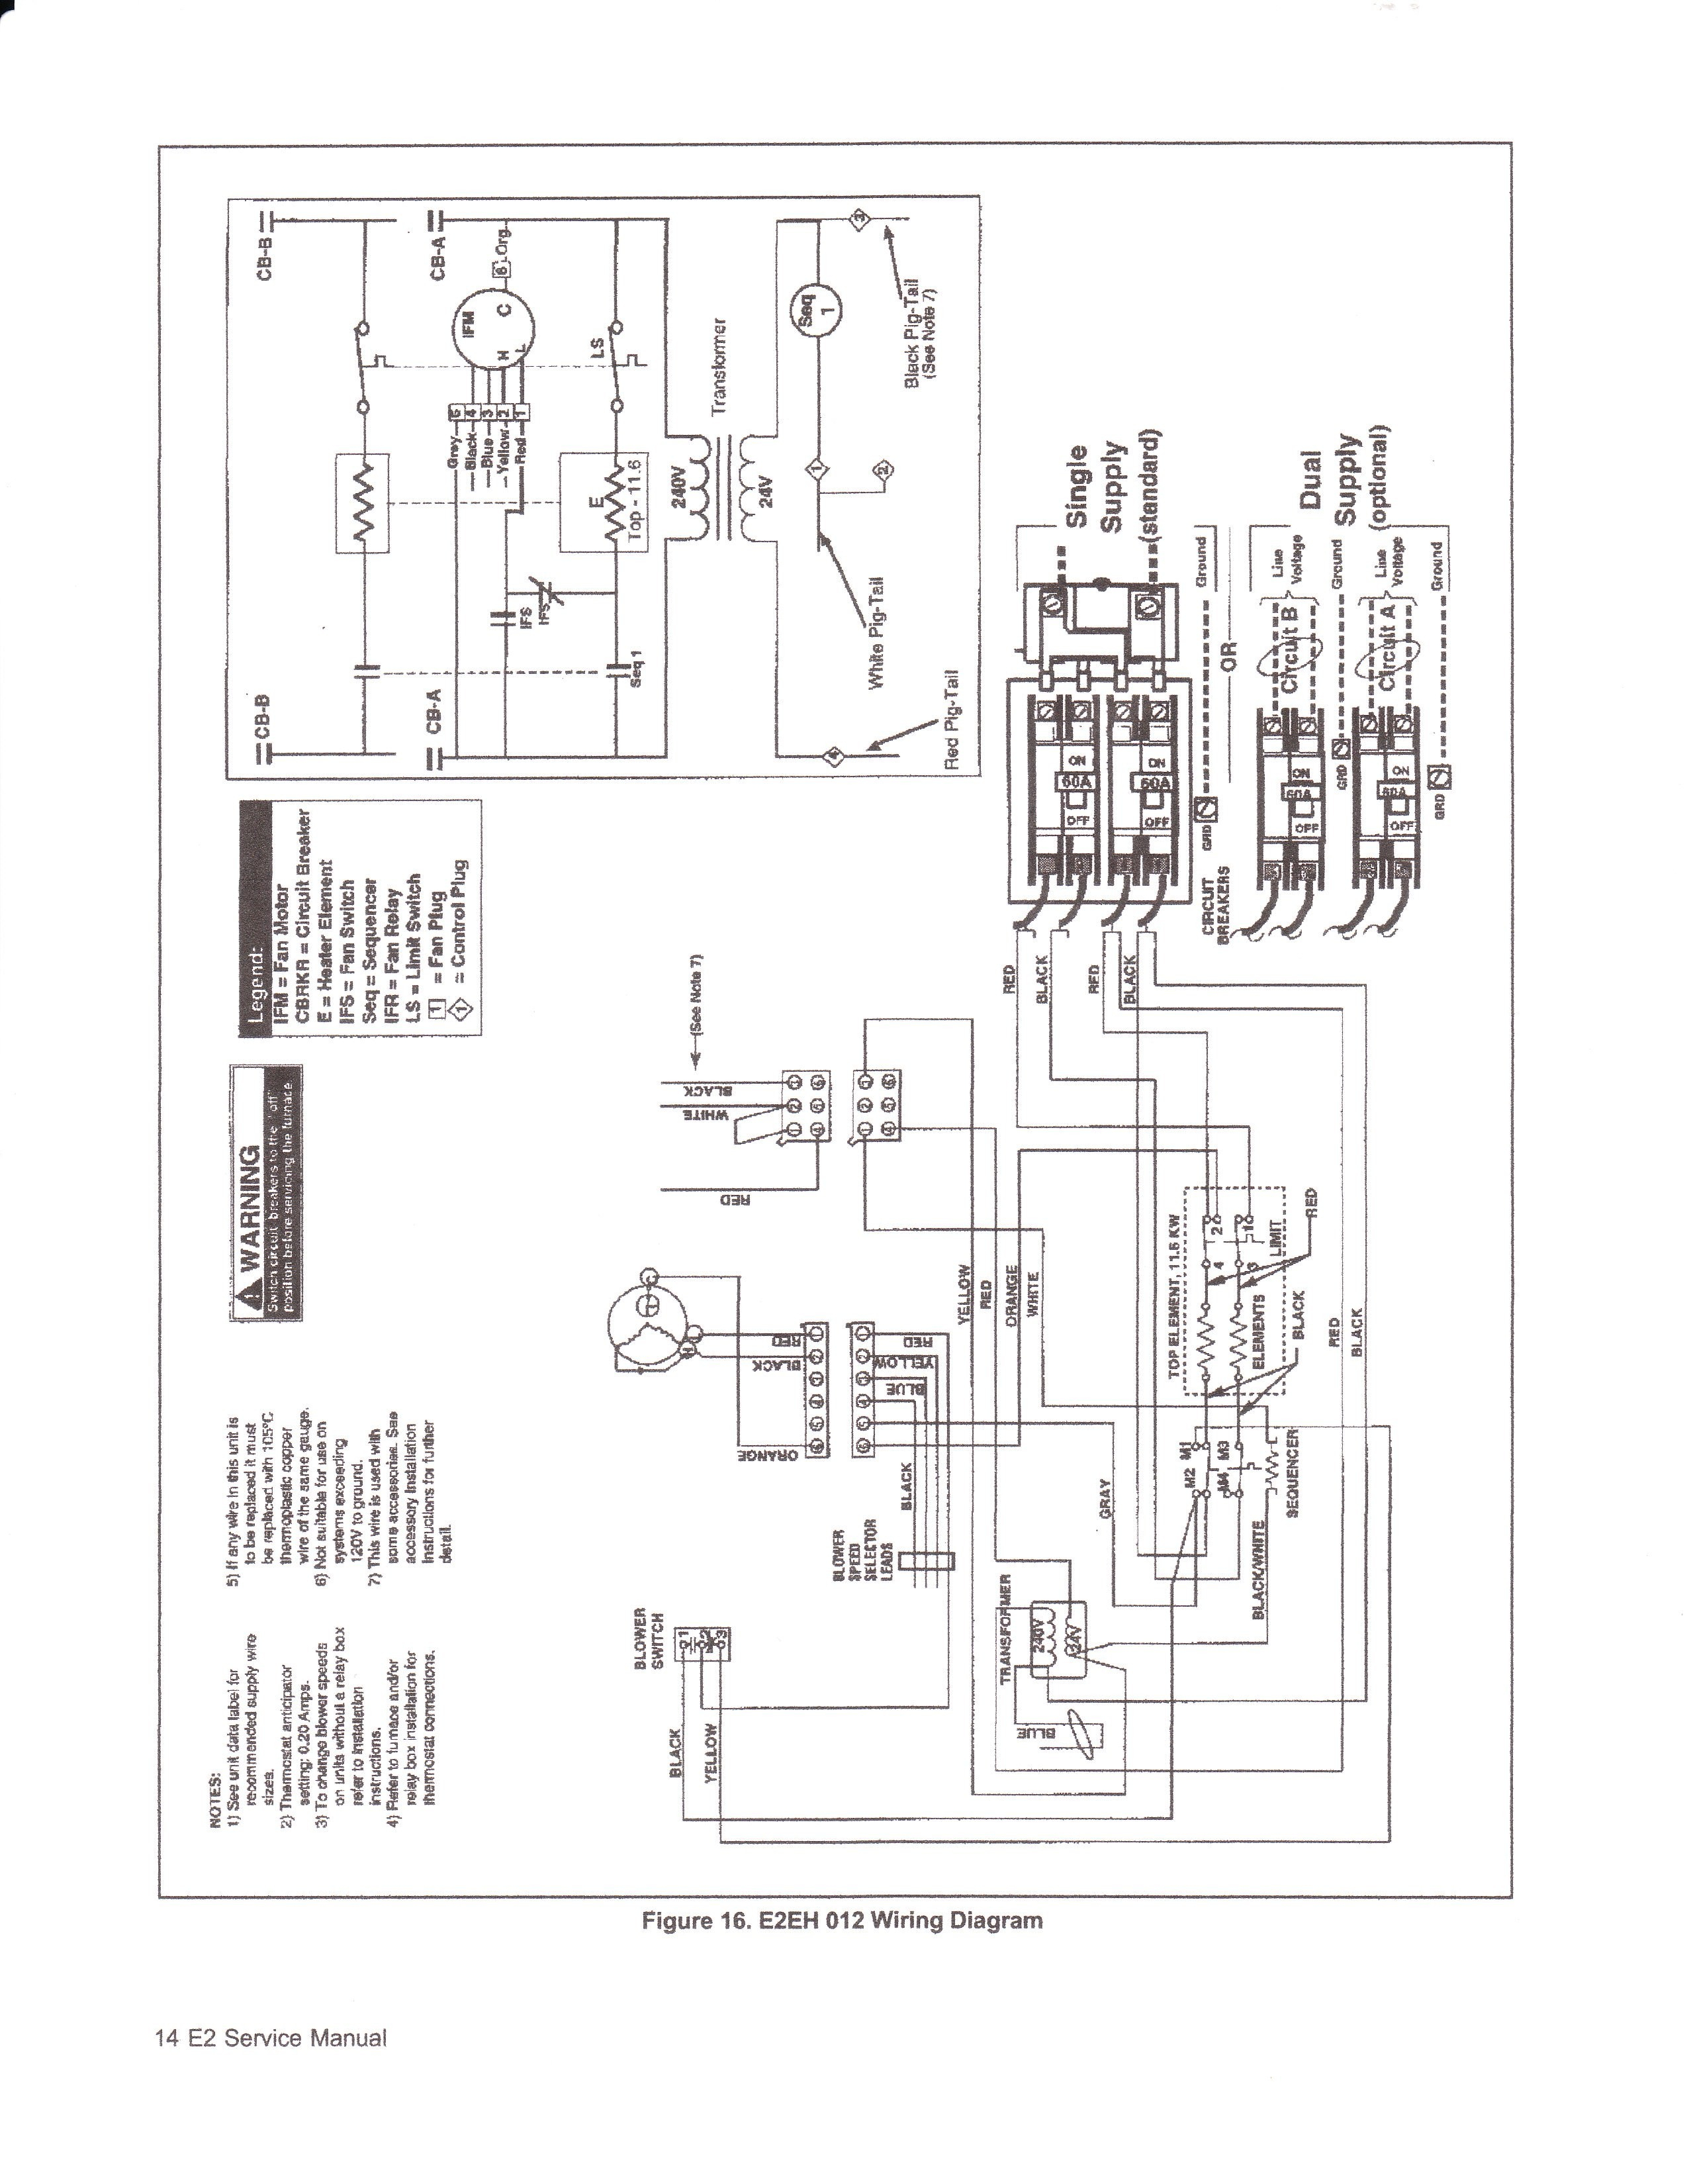 Miller Electric Furnace Wiring Diagram - Wiring Diagram Data - Electric Furnace Wiring Diagram